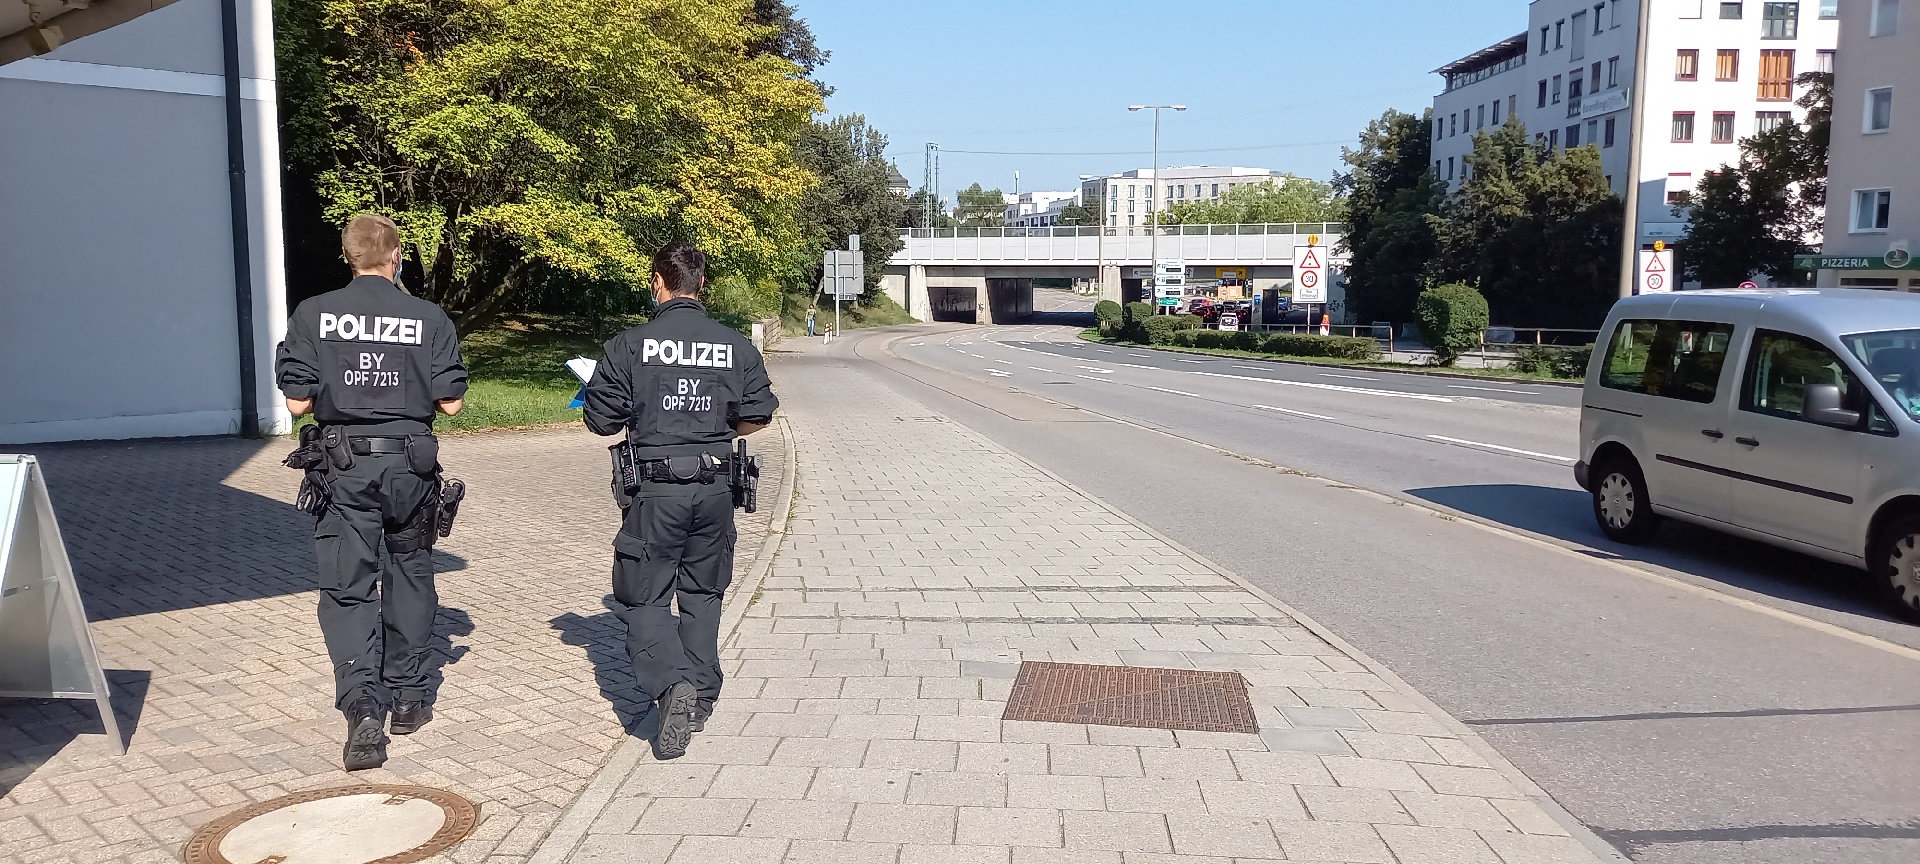 Sexualdelikt an einer Fußgängerin in Regensburg – Polizei befragt Anwohner